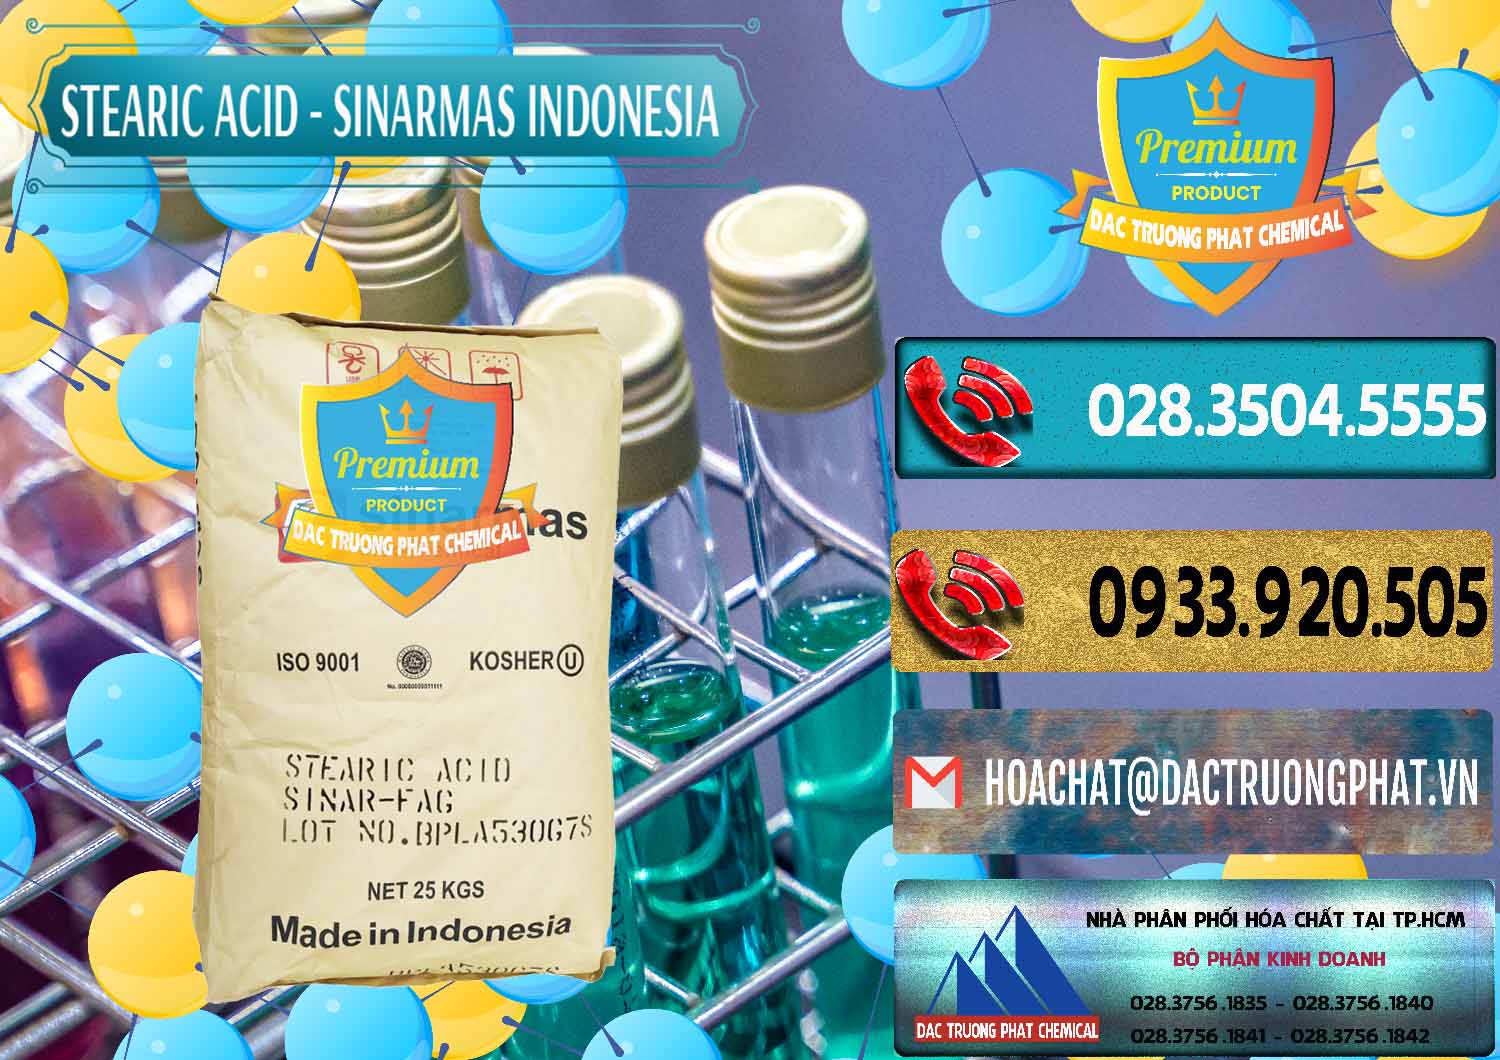 Nhà cung cấp & bán Axit Stearic - Stearic Acid Sinarmas Indonesia - 0389 - Chuyên cung cấp & phân phối hóa chất tại TP.HCM - hoachatdetnhuom.com